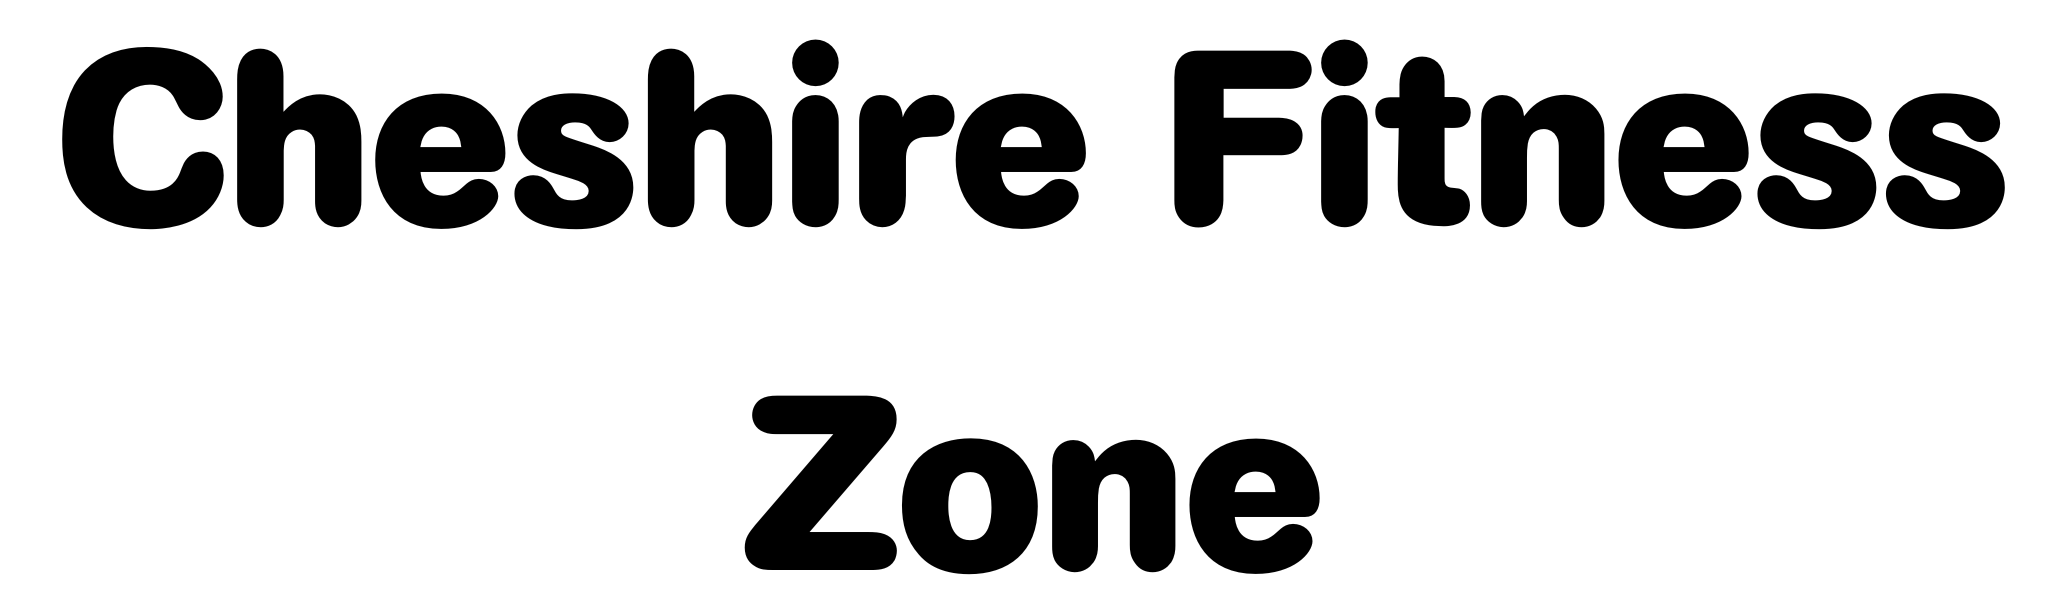 Cheshire Fitness Zone (Bronze)